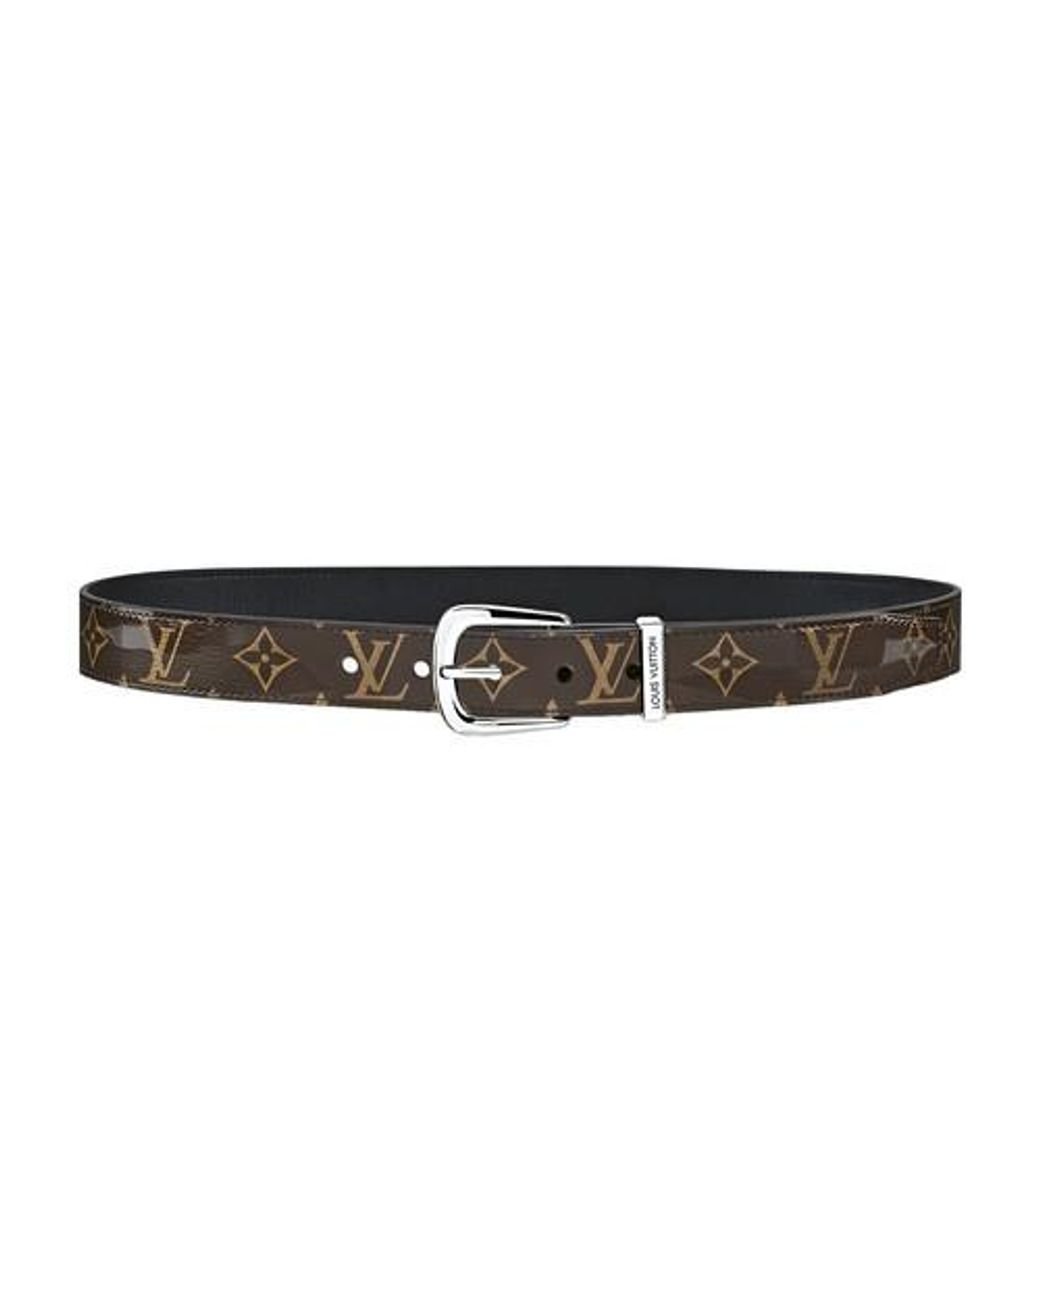 Louis Vuitton 2018 Very LV Twist 30MM Belt - Black Belts